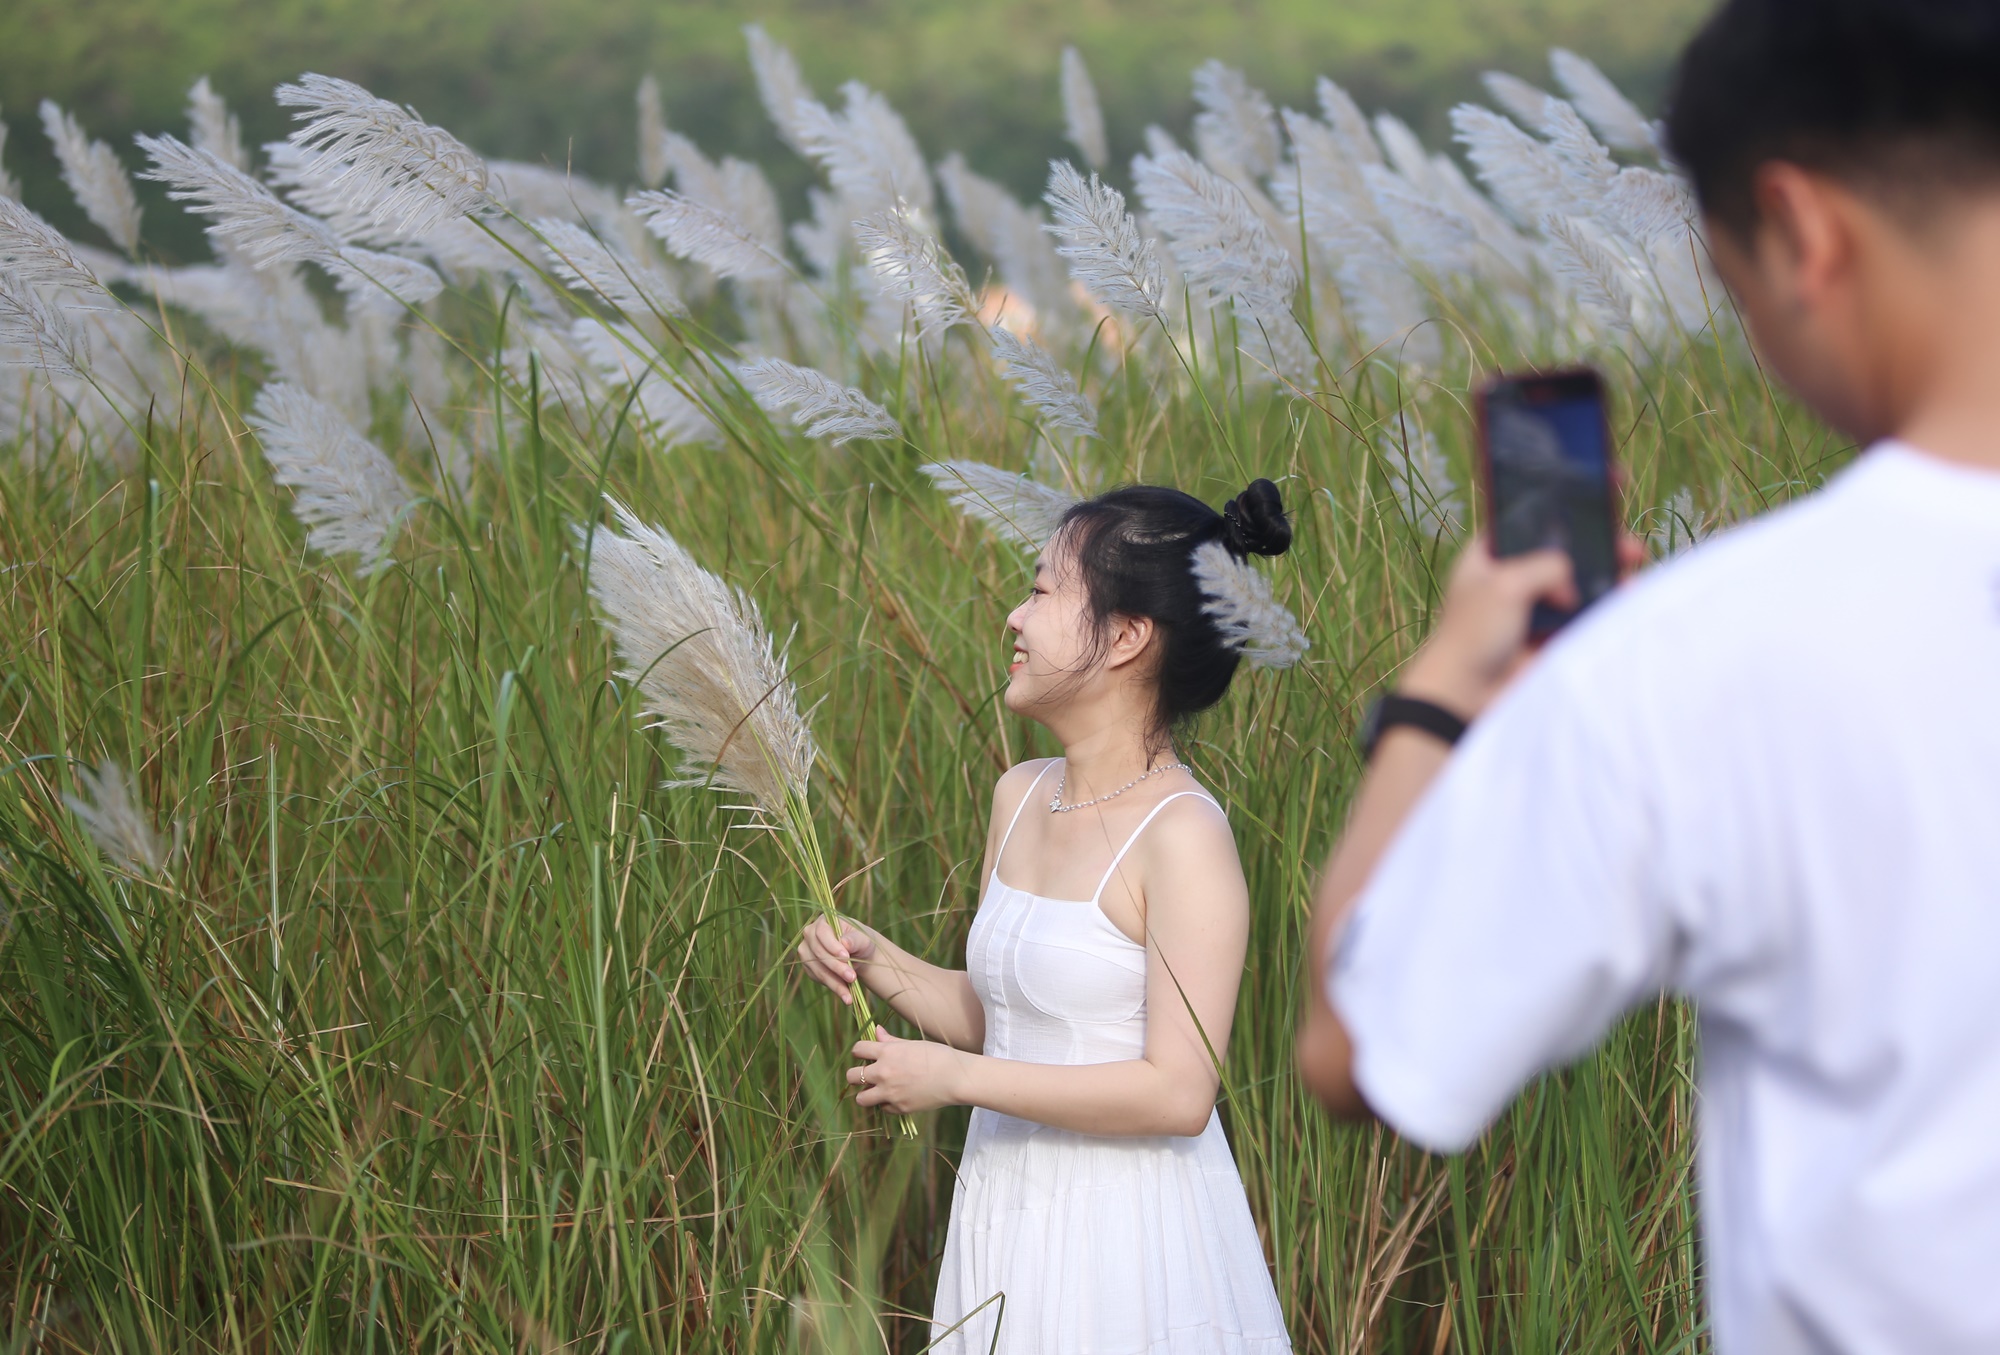 Người dân và du khách đổ xô check-in đồng cỏ lau trắng ở Đà Nẵng - Ảnh 17.